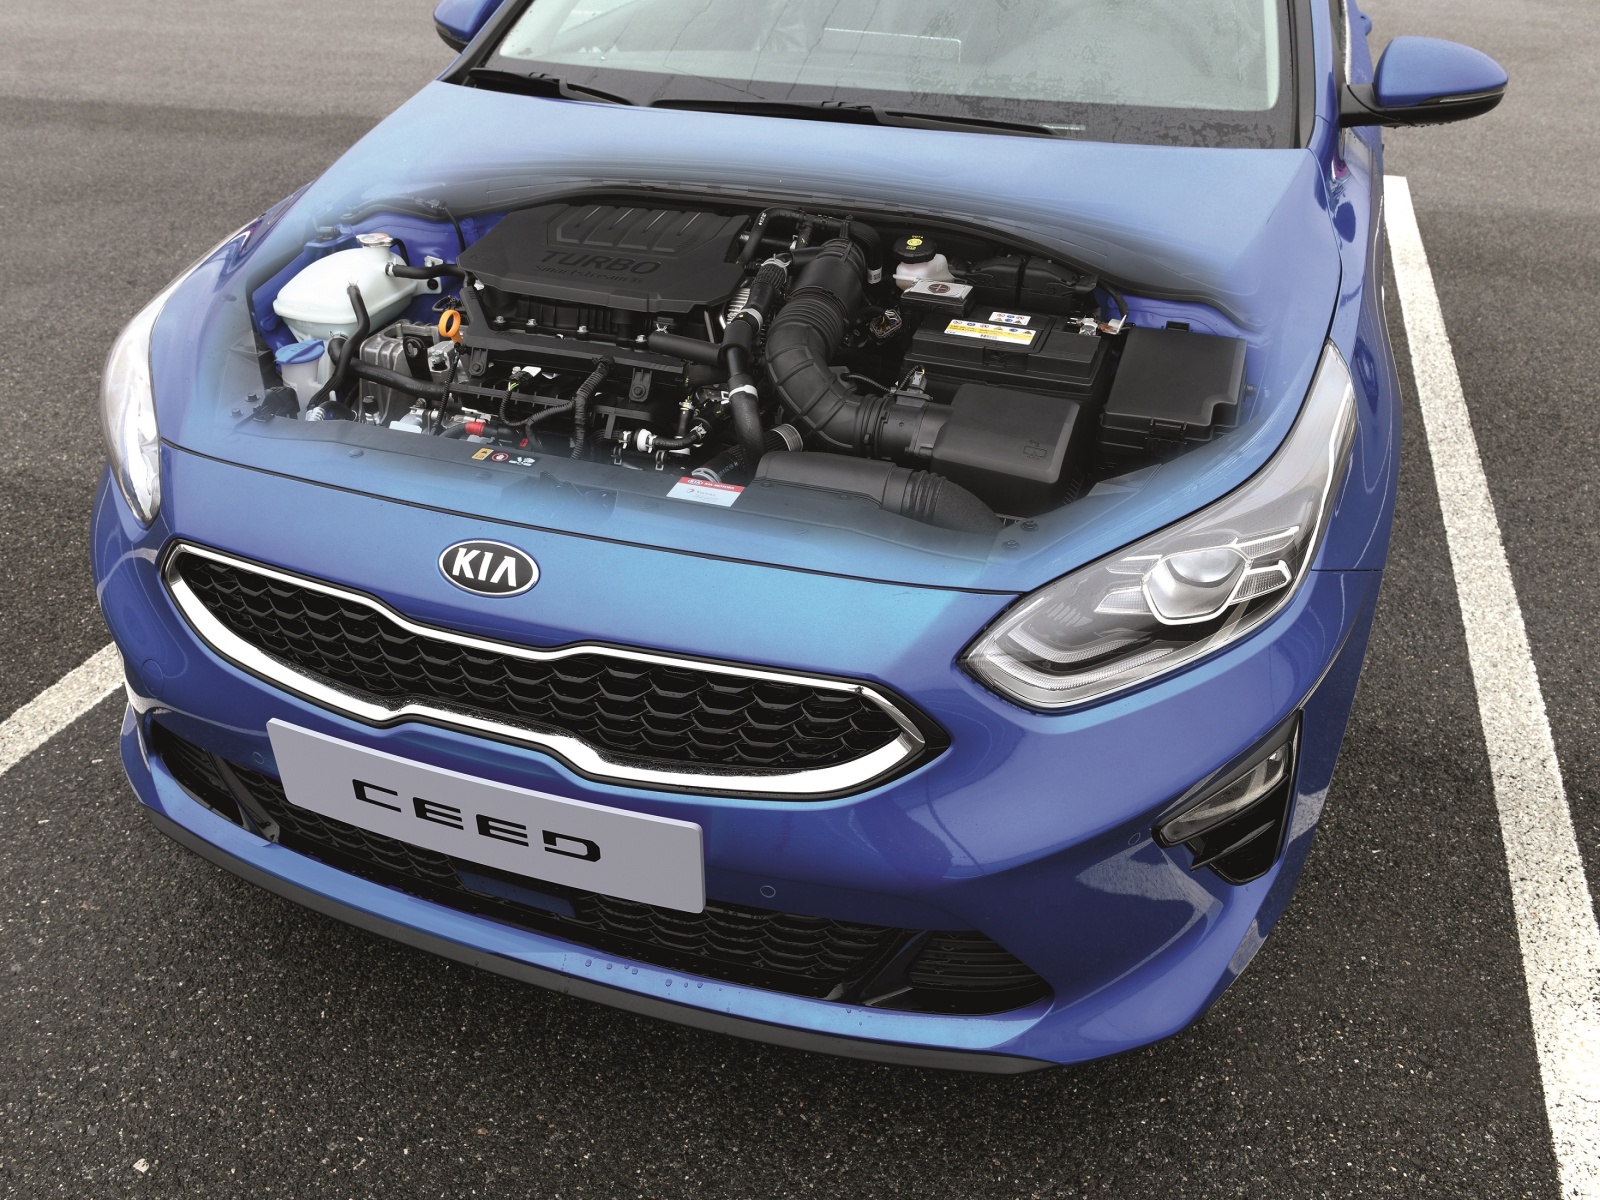 Kia Ceed má nový motor 1.5 T-GDi, který nahradí dosavadní 1.4 T-GDi